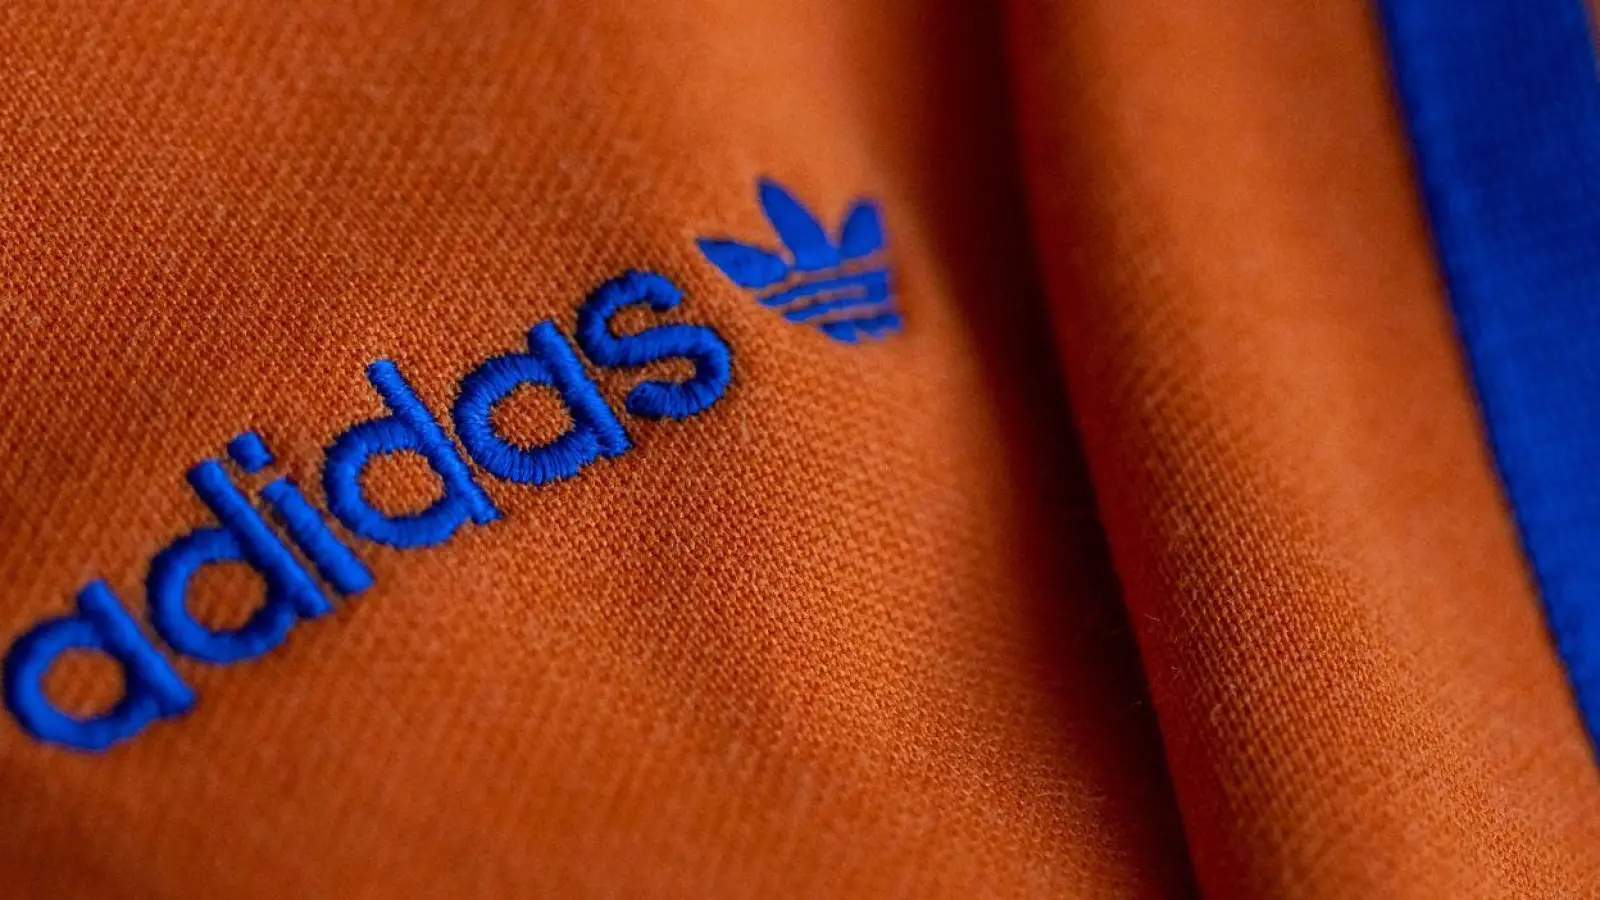 Streifen auf Sporthosen: Adidas hat gegen Nike wegen eines zu ähnlichen Designs geklagt. (Foto: Daniel Karmann/dpa)